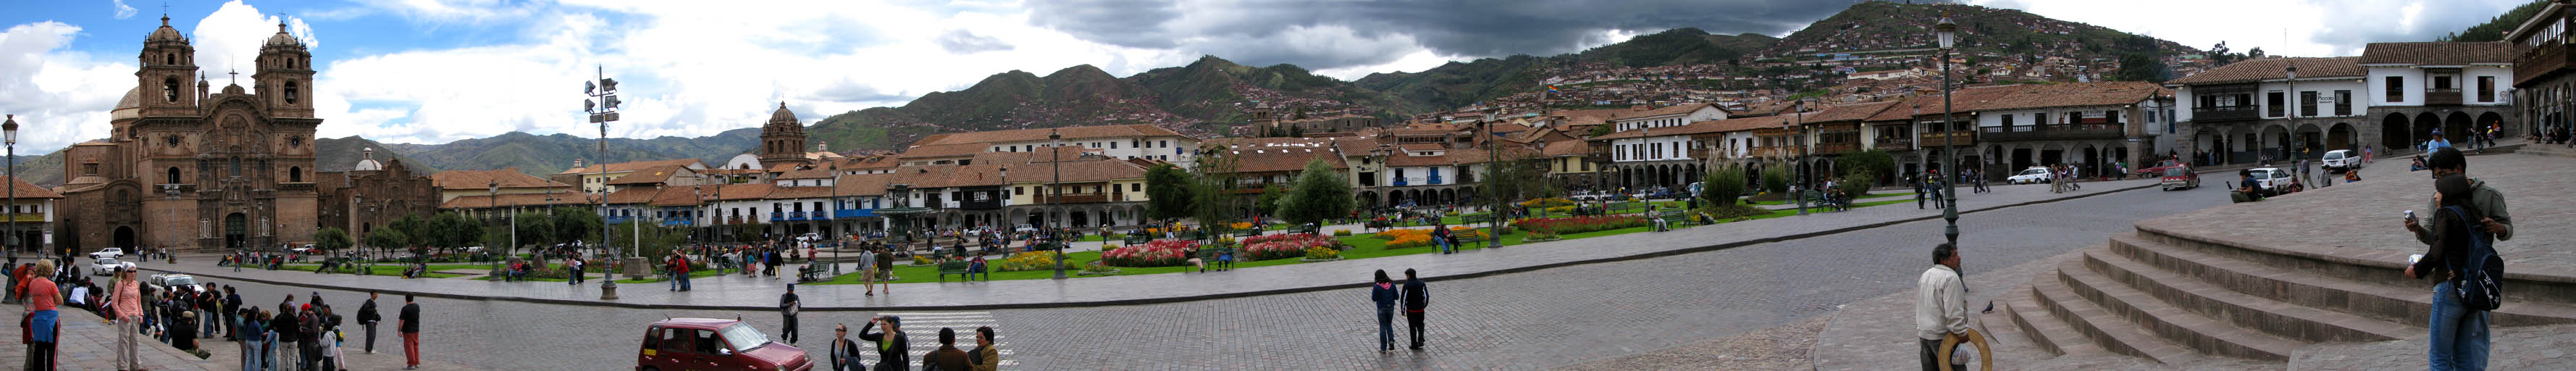 Plaza de Armas, Cusco. (Category:  Travel)